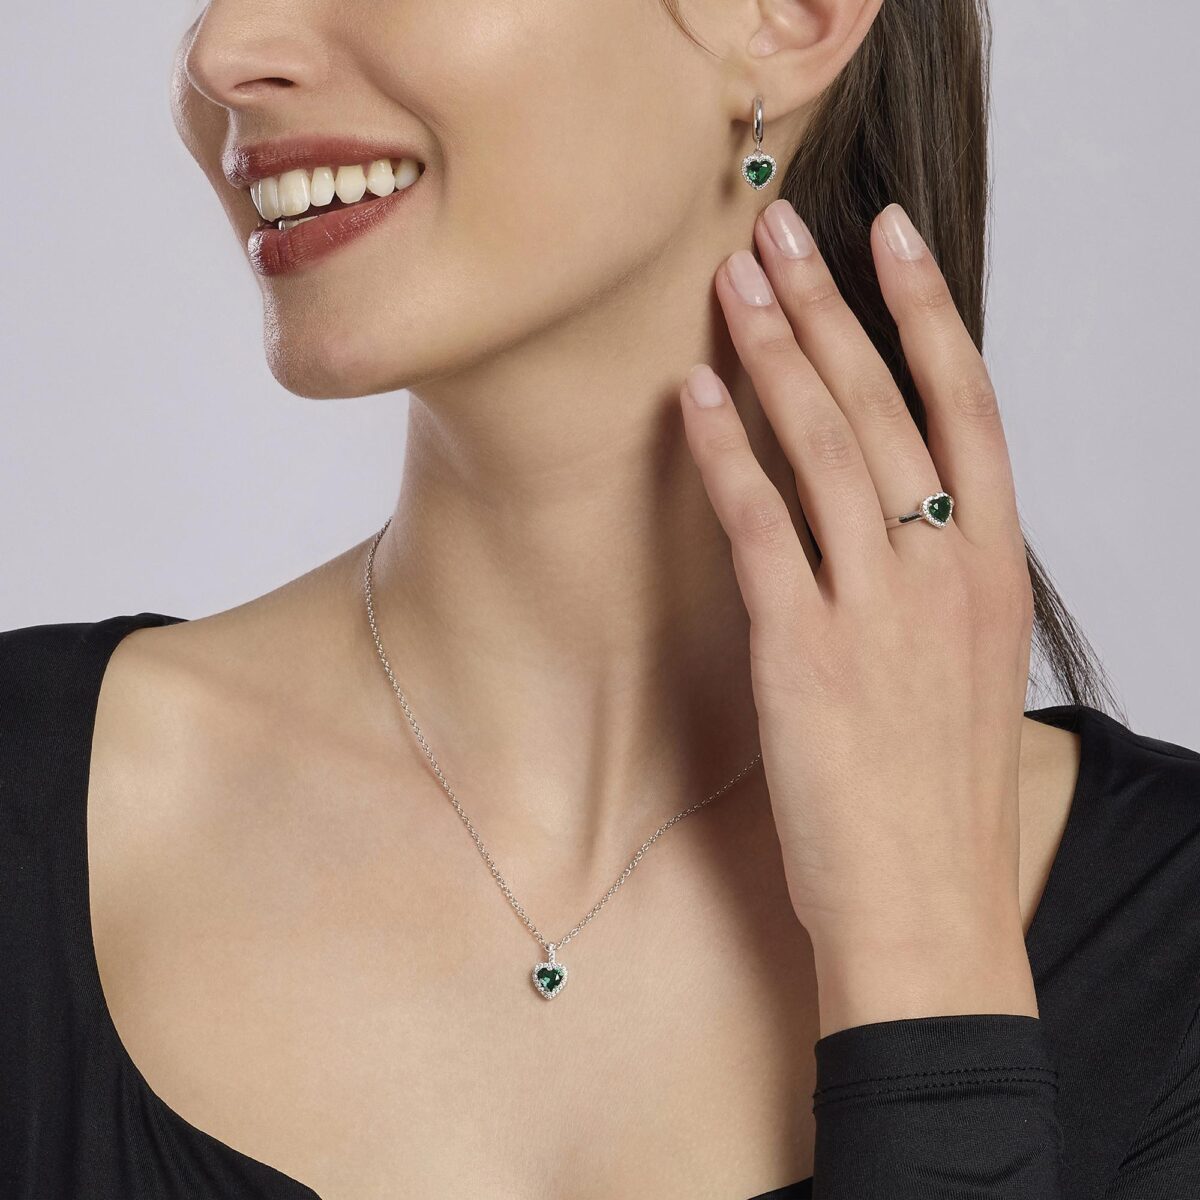 Collana con cuore in smeraldo sintetico mabina gioiello donna idea regalo 553600 parure